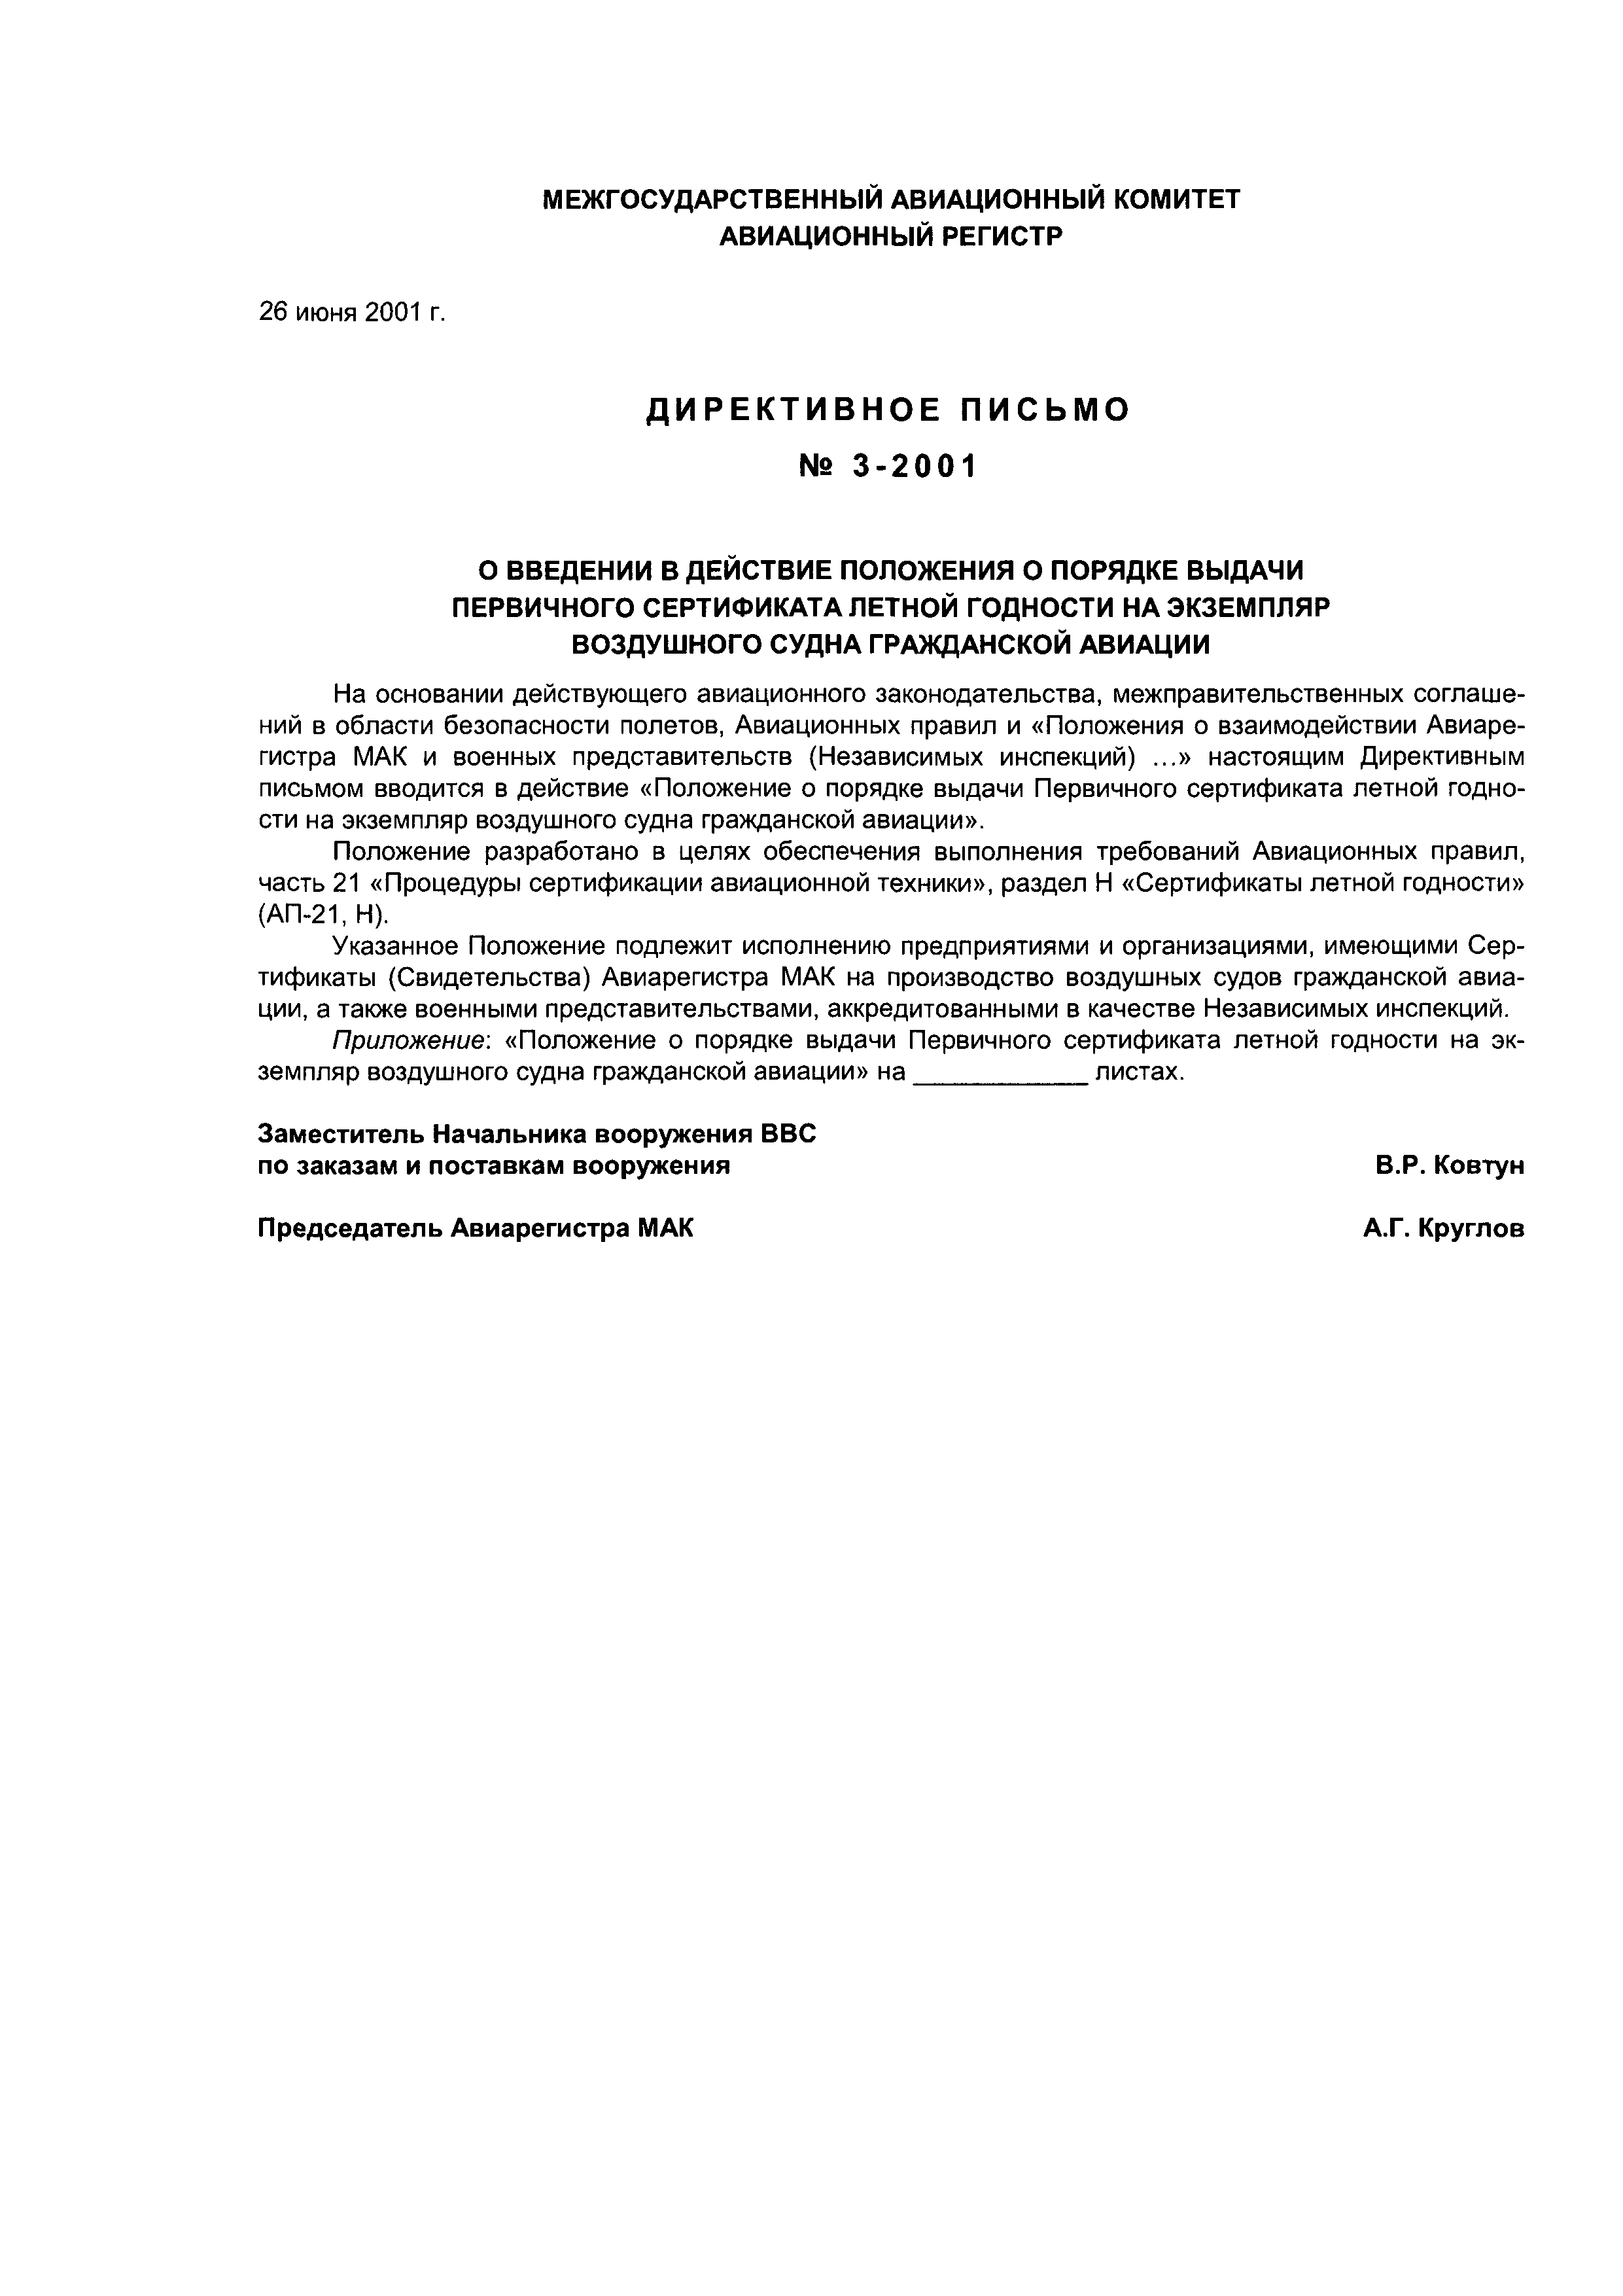 Директивное письмо 3-2001